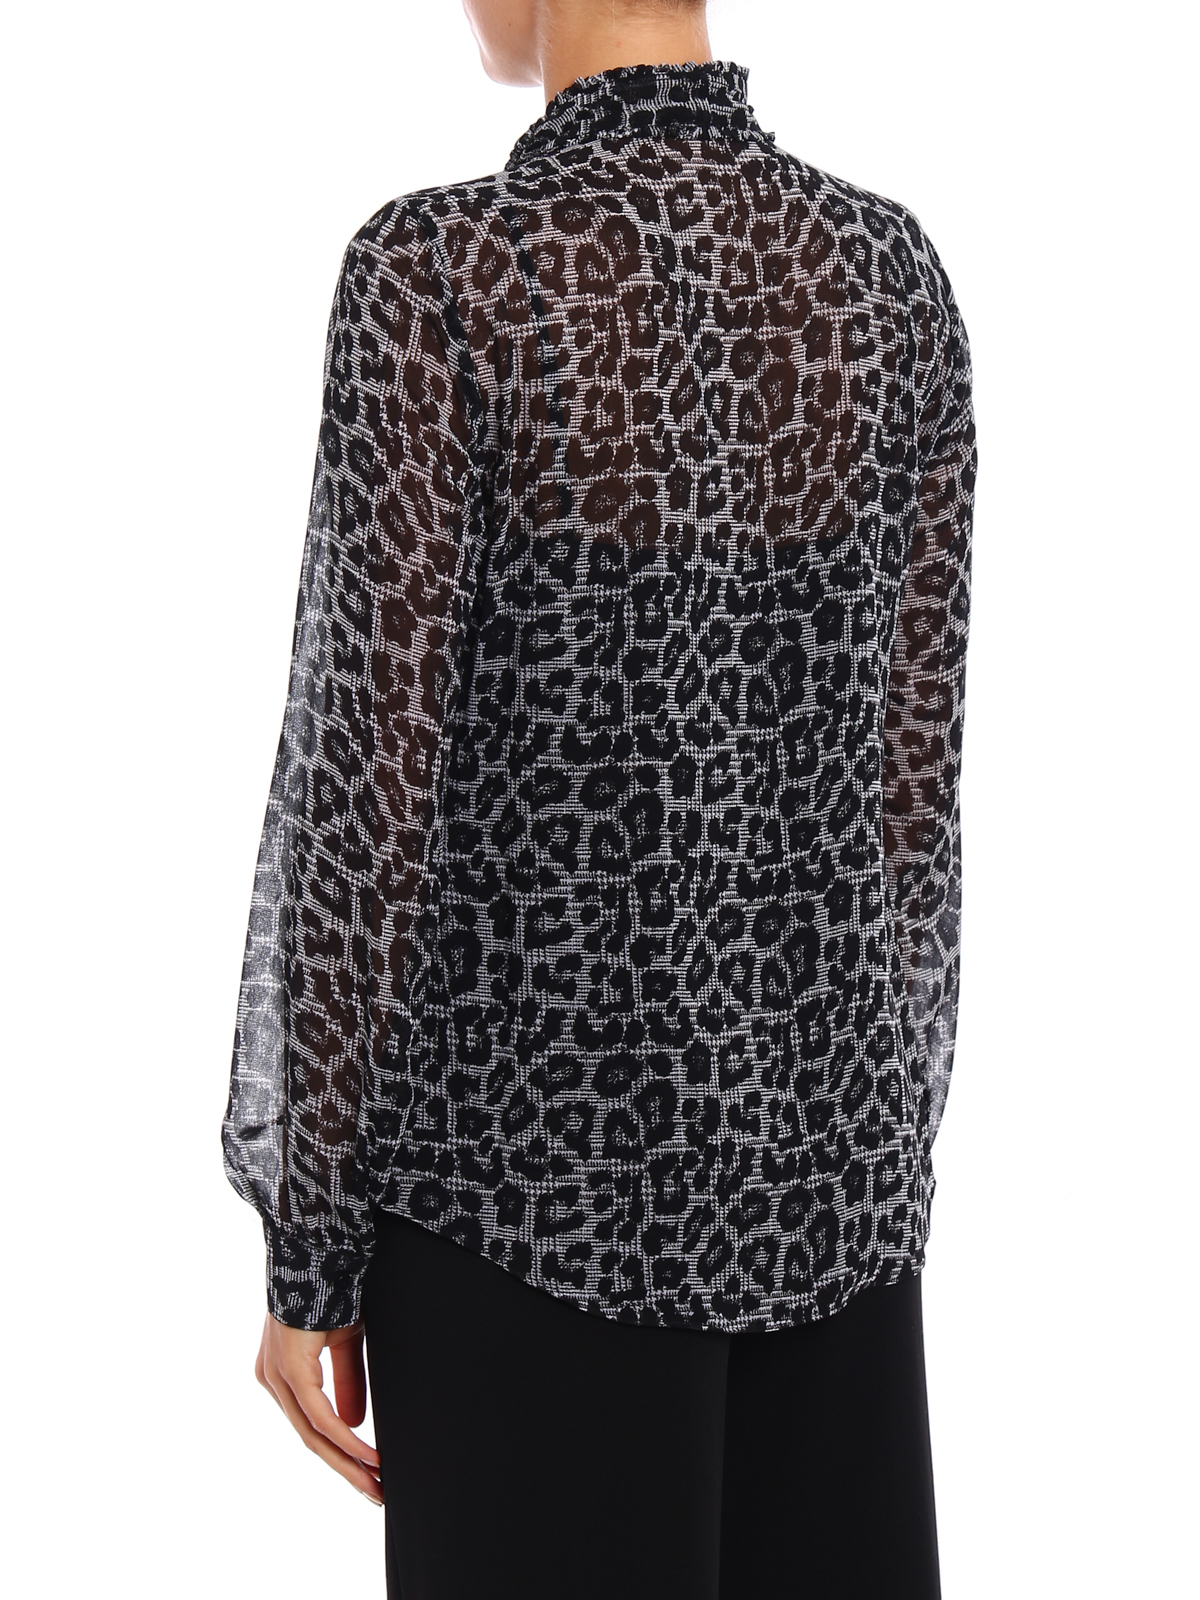 Shirts Michael Kors - Animal print shirt with bow - MF74L94782001